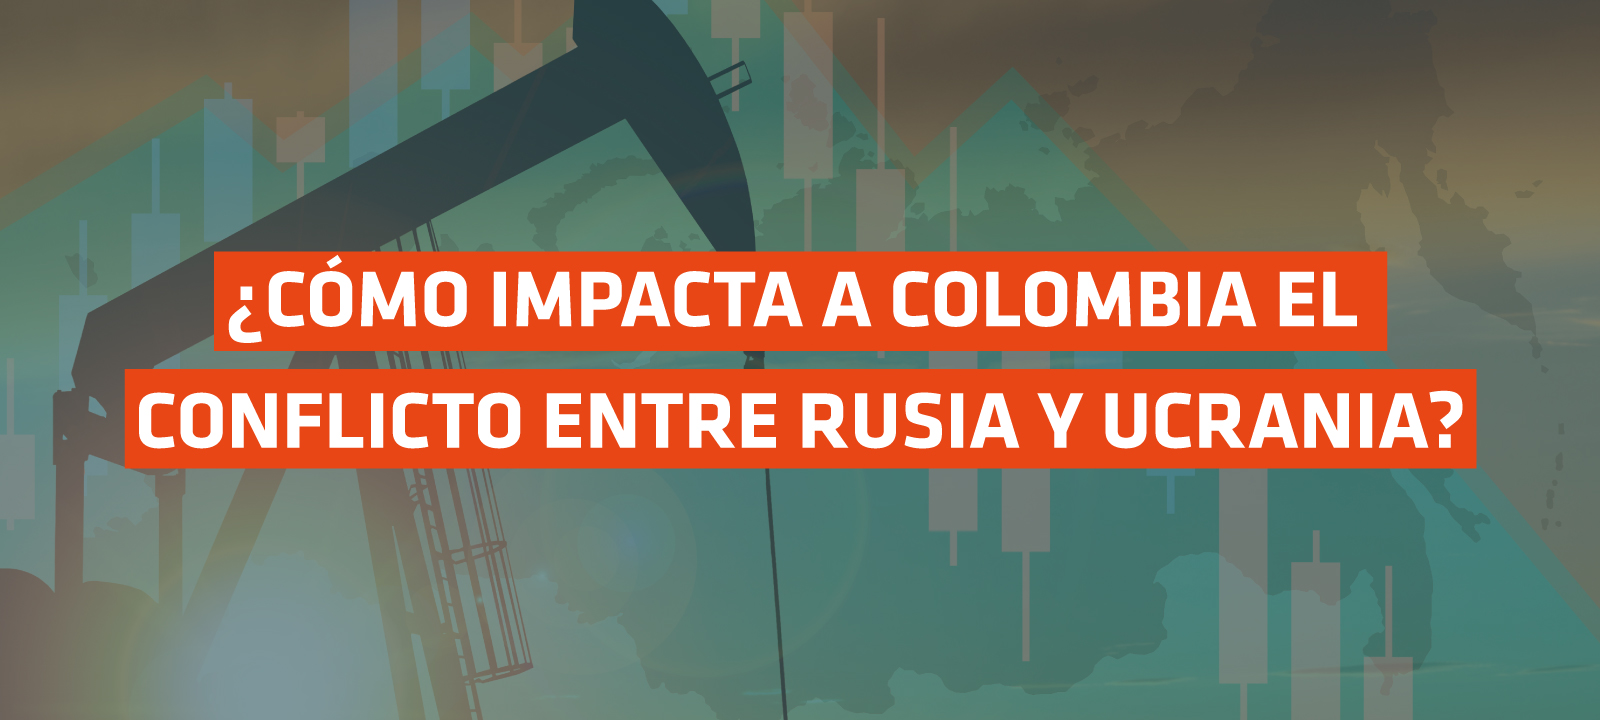 ¿Cómo impacta a Colombia el conflicto entre Rusia y Ucrania?